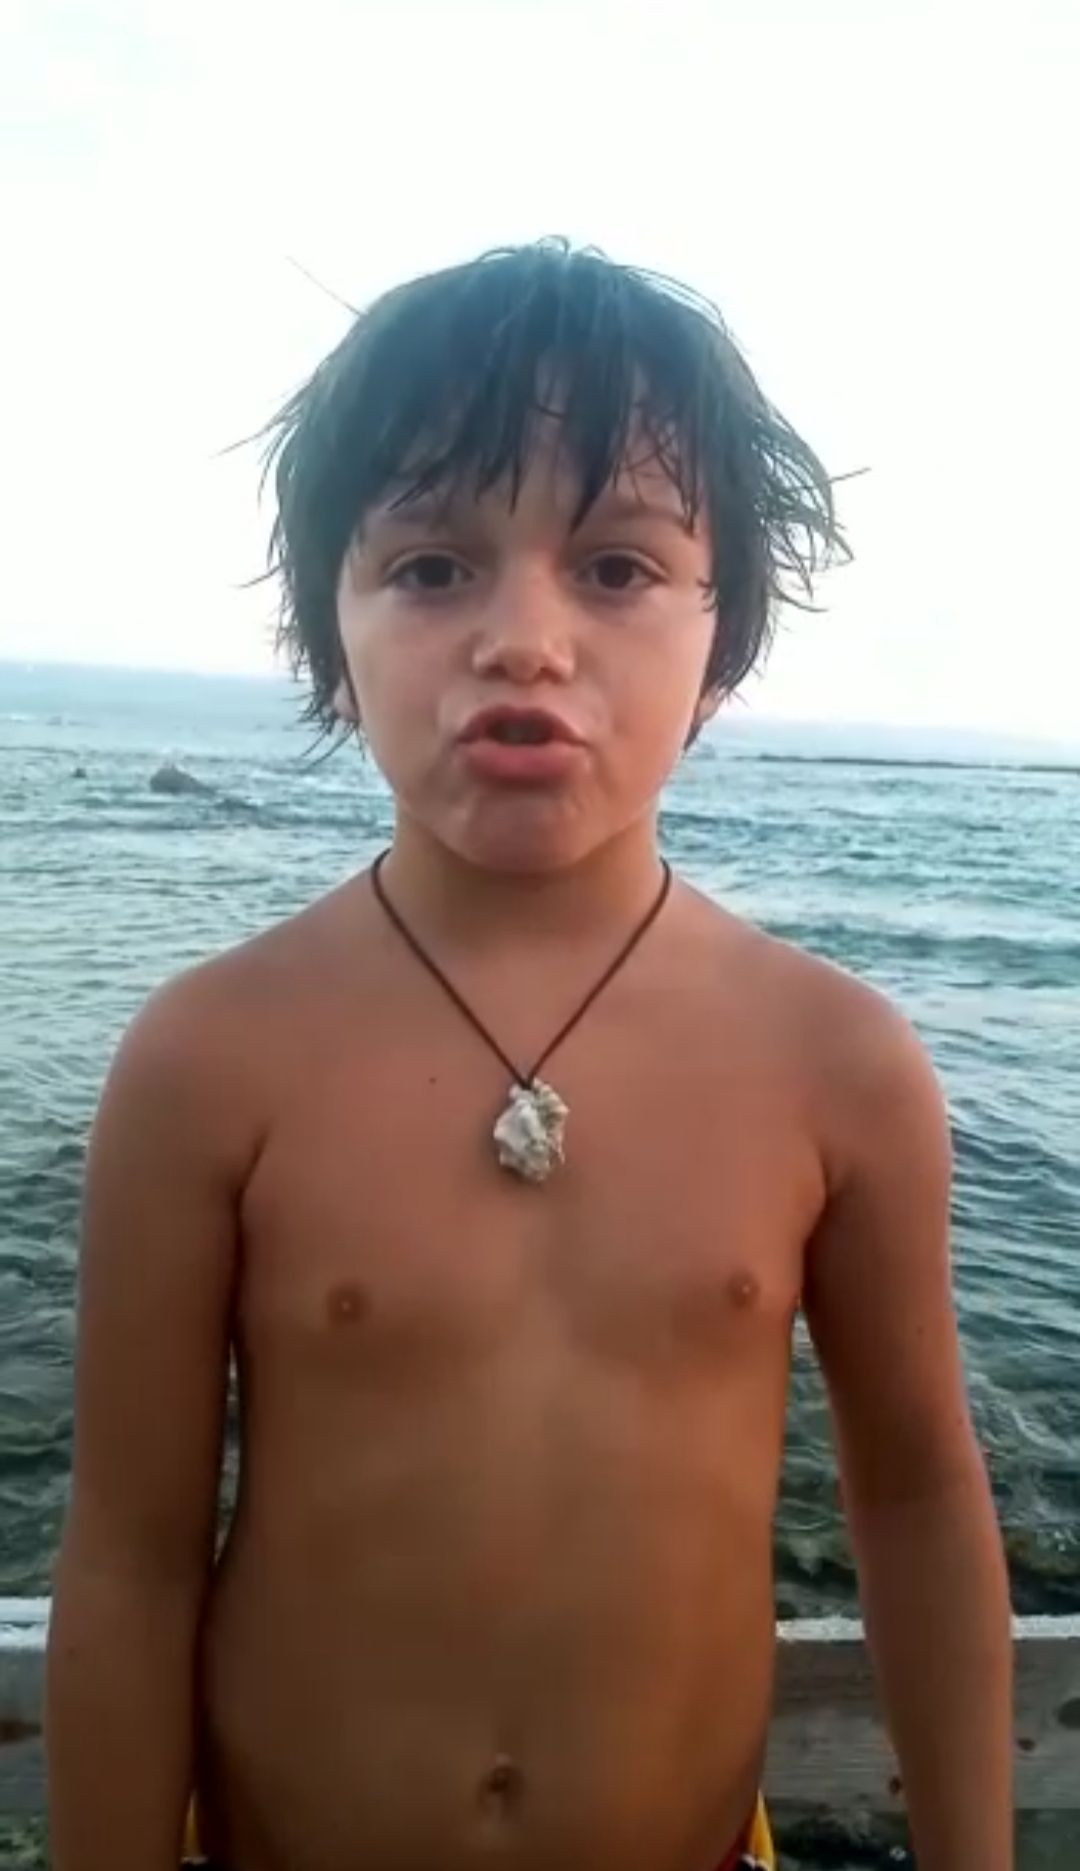 ألطفل محمد شادي حجازي يكتشفه البحر ليكون أصغر غطاس بلبنان/موقع معركة اونلاين